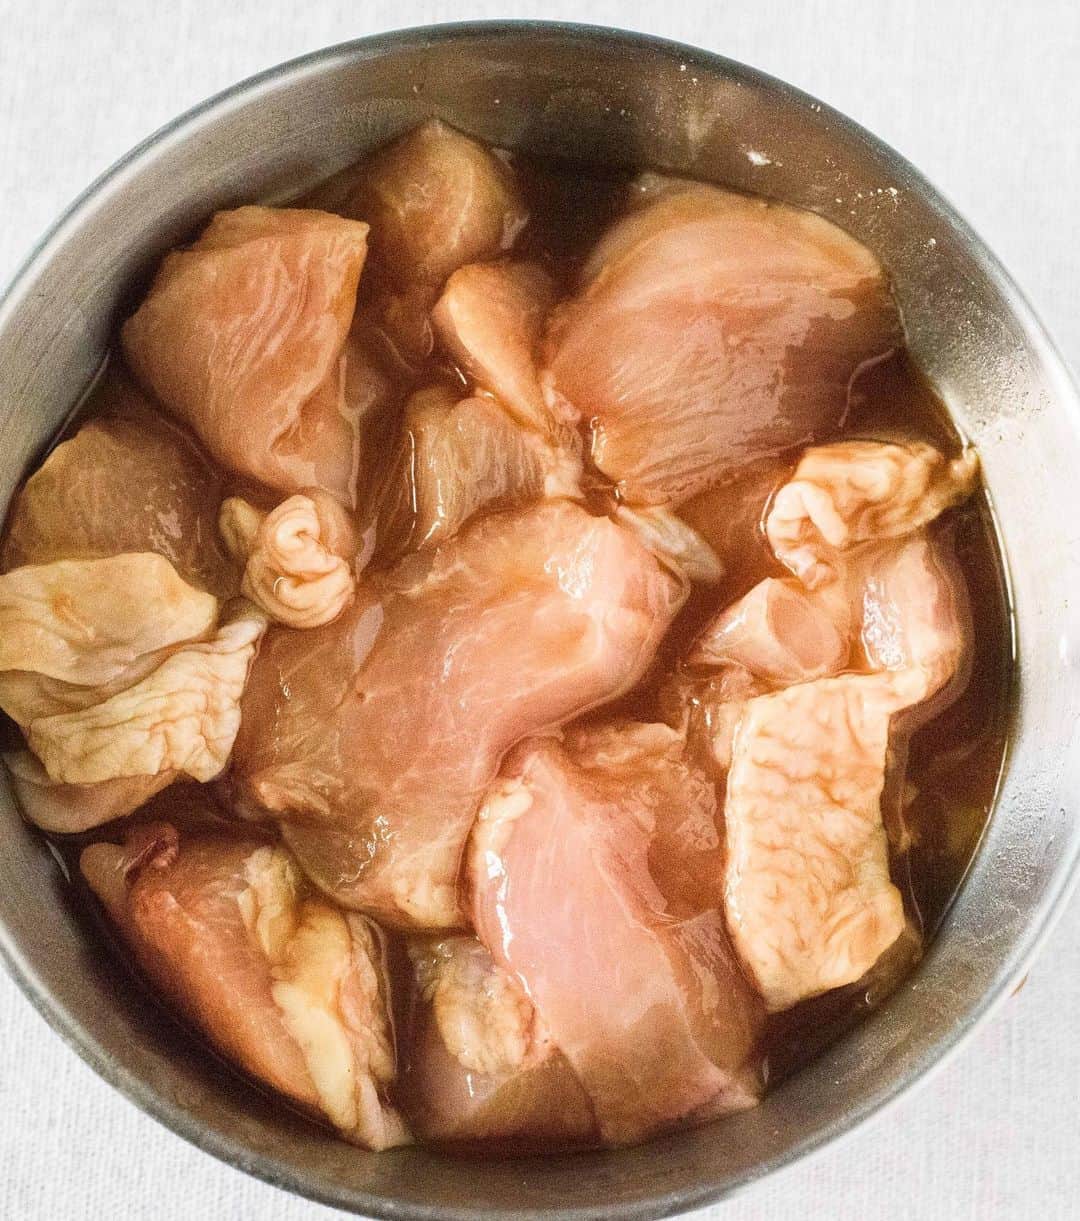 Iguchi Takuto... おうちごはんおじさんさんのインスタグラム写真 - (Iguchi Takuto... おうちごはんおじさんInstagram)「🍳Today’s kitchen(📝レシピあり)﻿ •鶏むね肉と茄子のオイスター炒め﻿ 最近ダイエット思考強めなので、鶏むねレシピをいろいろ開発中😙﻿ これめちゃめちゃ美味しいのでやってみて下さい😚﻿ ﻿ 🐔材料﻿ ・鶏むね肉……1枚﻿ ・茄子……1本﻿ ・ピーマン……3個(緑2個/赤1個)﻿ ・サラダ油……大さじ3﻿ ・塩……1つまみ﻿ ・オイスターソース……大さじ1.5﻿ ★片栗粉……小さじ2﻿ ★みりん……大さじ1﻿ ★酒……大さじ1﻿ ★醤油……大さじ1﻿ ﻿ 🔪下準備﻿ ・鶏むね肉・茄子・ピーマンを大きめにカットする﻿ ・ボウルに鶏むね肉を入れ、★の調味料を混ぜ合わせ、10分ほど馴染ませる﻿ ﻿ ﻿ 🍳作り方﻿ 1. フライパンにサラダ油をひき、中火で鶏肉を全面じっくり焼く﻿ 2. 茄子とピーマンを入れ、塩を振り、炒める﻿ 3. オイスターソースを入れ、さっと炒めて完成﻿ ﻿ 📝ポイント﻿ ・大きめにカットすること﻿ ・強火にしすぎず、鶏むね肉にじっくり火を通すこと﻿ この2つで、しっとりジューシーに仕上がります。﻿ ﻿ ﻿ 是非お試しください😝﻿ ﻿ ﻿ 美味しいで日本を元気に꒰⍨꒱.+*﻿ ﻿ ━…━…━…━…━…━…━…━…━…━﻿ ﻿ ▼.YouTube始めました🍳﻿ 【らくうまチャンネル】と検索して下さい。﻿ 簡単×美味しい料理はもちろん、﻿ <食をエンターテイメントに💐>をテーマに、﻿ 楽しいコンテンツをたくさん投稿していきます！﻿ 是非チャンネル登録お願いします🙇‍♂️﻿ https://www.youtube.com/channel/UCU8N32A-DZ4aGMH1YZ06gYA﻿ ﻿ ▼.料理教室主宰しています🍳(..開講祝1年💐)﻿ Foodies Labo(@foodies_labo)﻿ 簡単×美味しいに拘り、都内で料理教室を開催しています。﻿ 料理初心者•初参加の方•お友達との参加も大歓迎🙆‍♂️🙆‍♀️﻿ まずは気軽にフォローして下さい！﻿ ﻿ ▼.デリバリー専門のレストランを始めました🍴 ﻿ Foodies Tokyo(@foodies_tokyo)﻿ 不定期での営業となりますが、﻿ Uber Eatsに出店しています！﻿ イベントなども都度行っていますので、﻿ 詳しくは、公式アカウントをご覧下さい！﻿ ﻿ ▼.ストーリーズのハイライトをまとめました🎥﻿ 過去にストーリーズで配信した、イベントの様子や、﻿ 企業さまとのお仕事、日々の料理のシーン、﻿ 自身の掲載記事など、アイコン毎にまとめています。﻿ ご興味ある方はご覧下さい！﻿ ﻿ ━…━…━…━…━…━…━…━…━…━﻿ #らくうま飯#らくうま料理#らくうま料理家#らくうま料理研究家#料理家#料理研究家#フードスタイリスト#井口タクト#おうちごはん#おうちごはんおじさん#おうちごはんLover#料理男子#家庭料理#簡単料理#時短料理#簡単ごはん#料理記録#飯テロ#マカロニメイト#料理好きな人と繋がりたい#Foodstylist#ouchigohan_ojisan#IGersJP#japanesefood﻿ #らくうまレシピ#おうちごはんおじさんのレシピ #時短レシピ #簡単レシピ #レシピ#鶏むね肉」8月7日 18時22分 - ouchigohan_ojisan